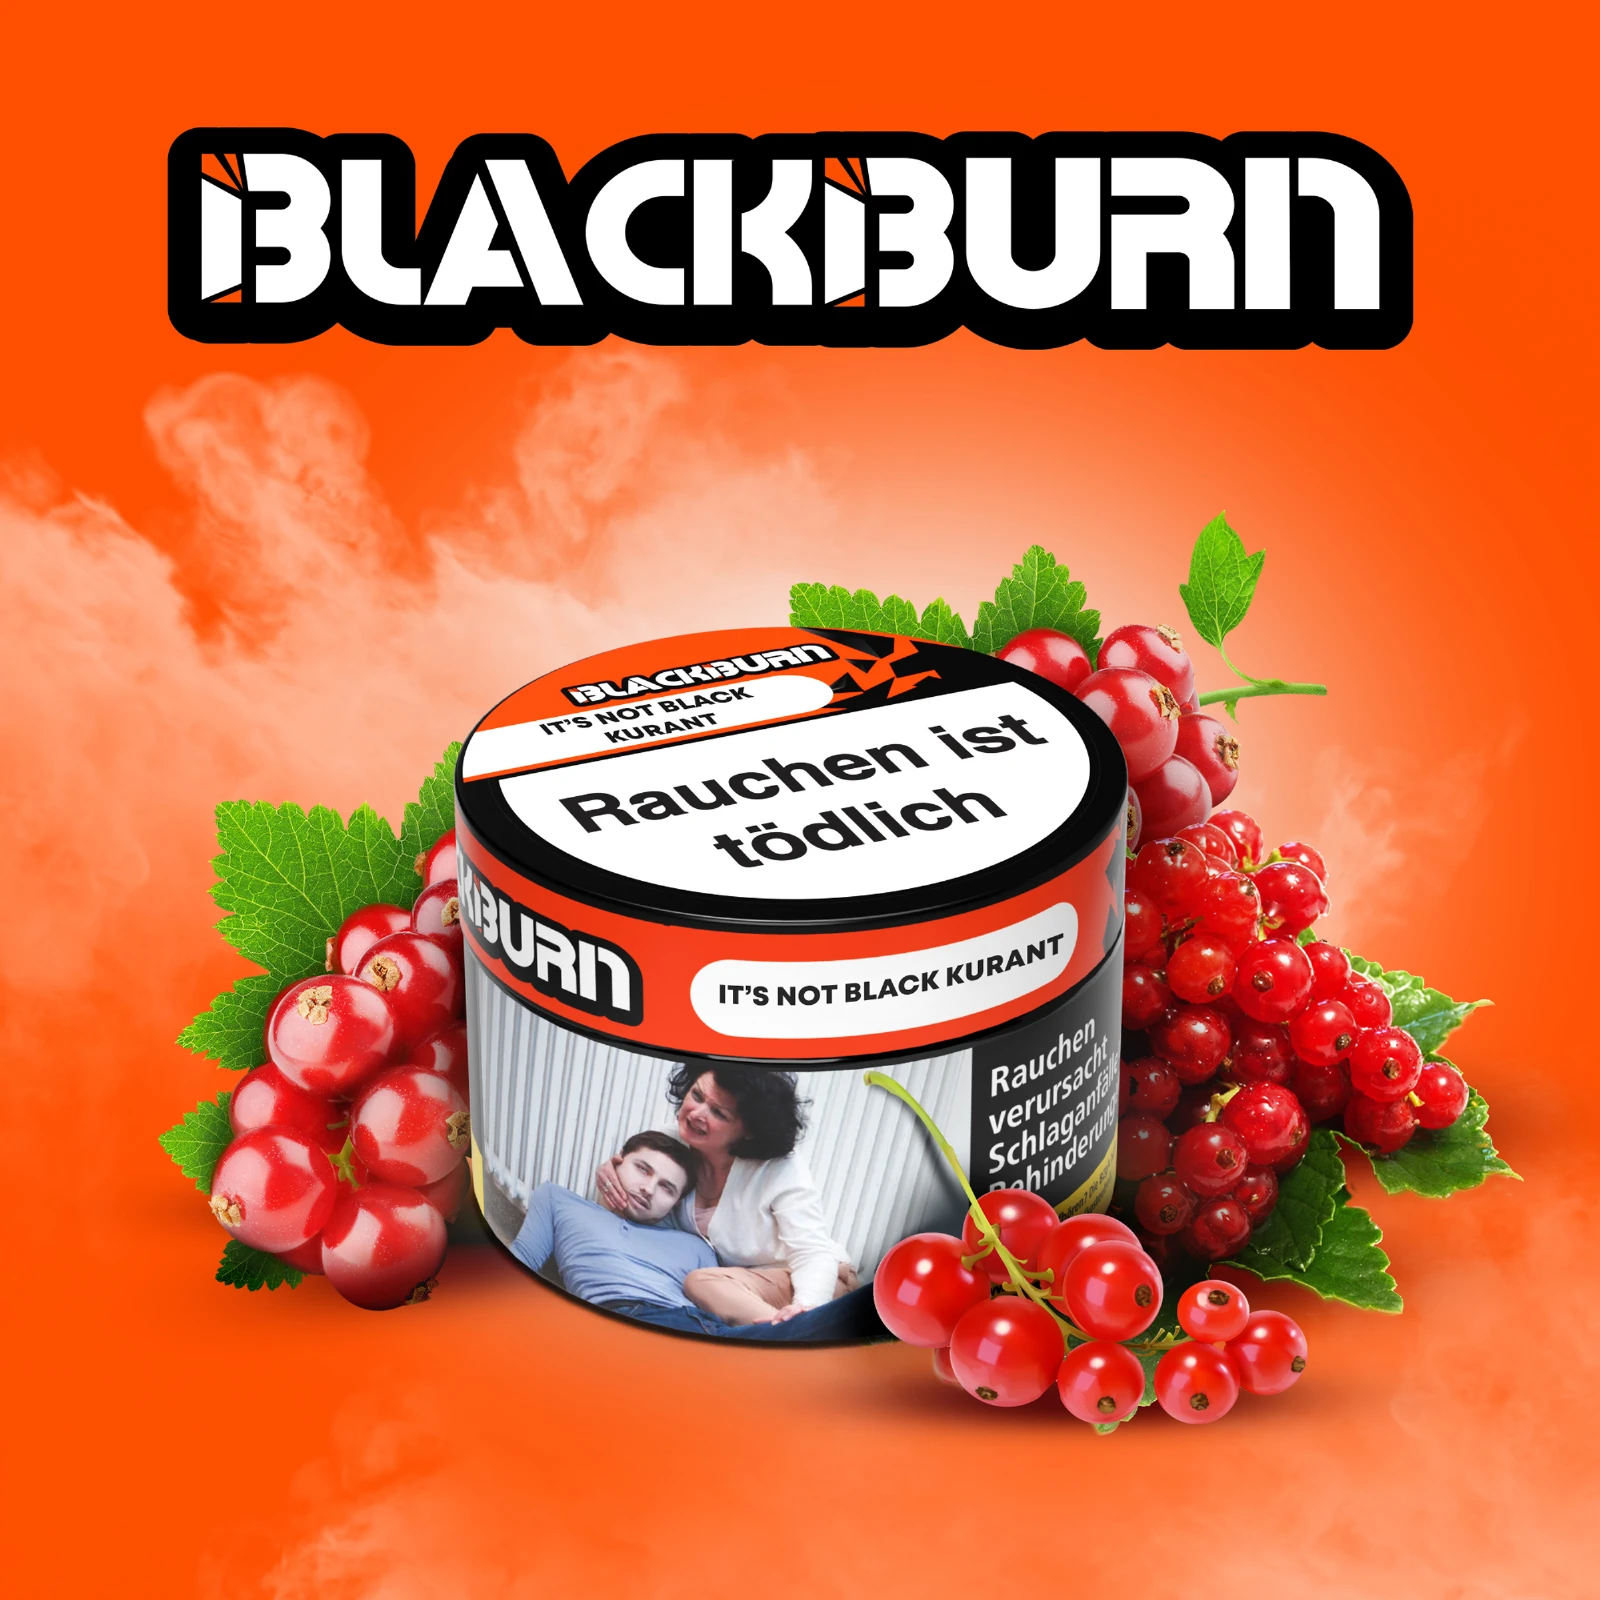 Blackburn - It's Not Black Kurant - 25g | Burley Shishatabak 1